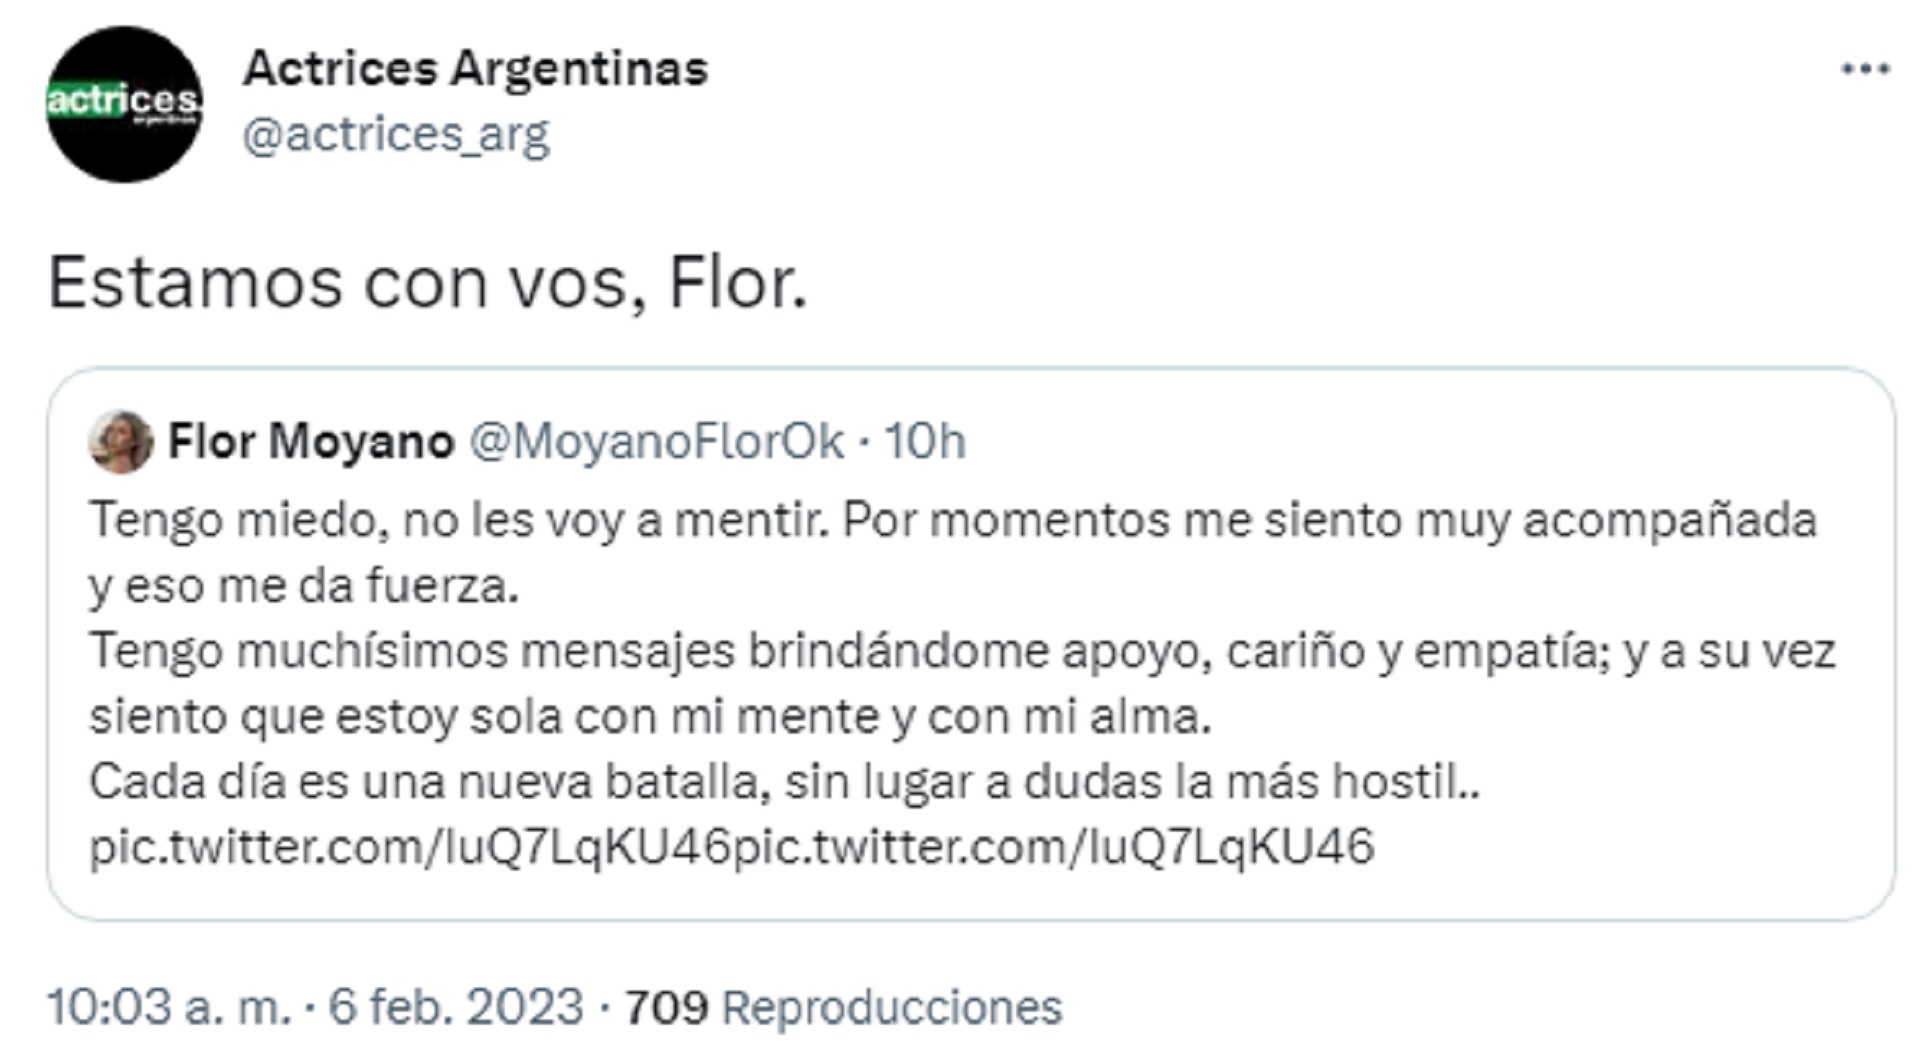 El mensaje de apoyo de Actrices Argentinas a Flor Moyano